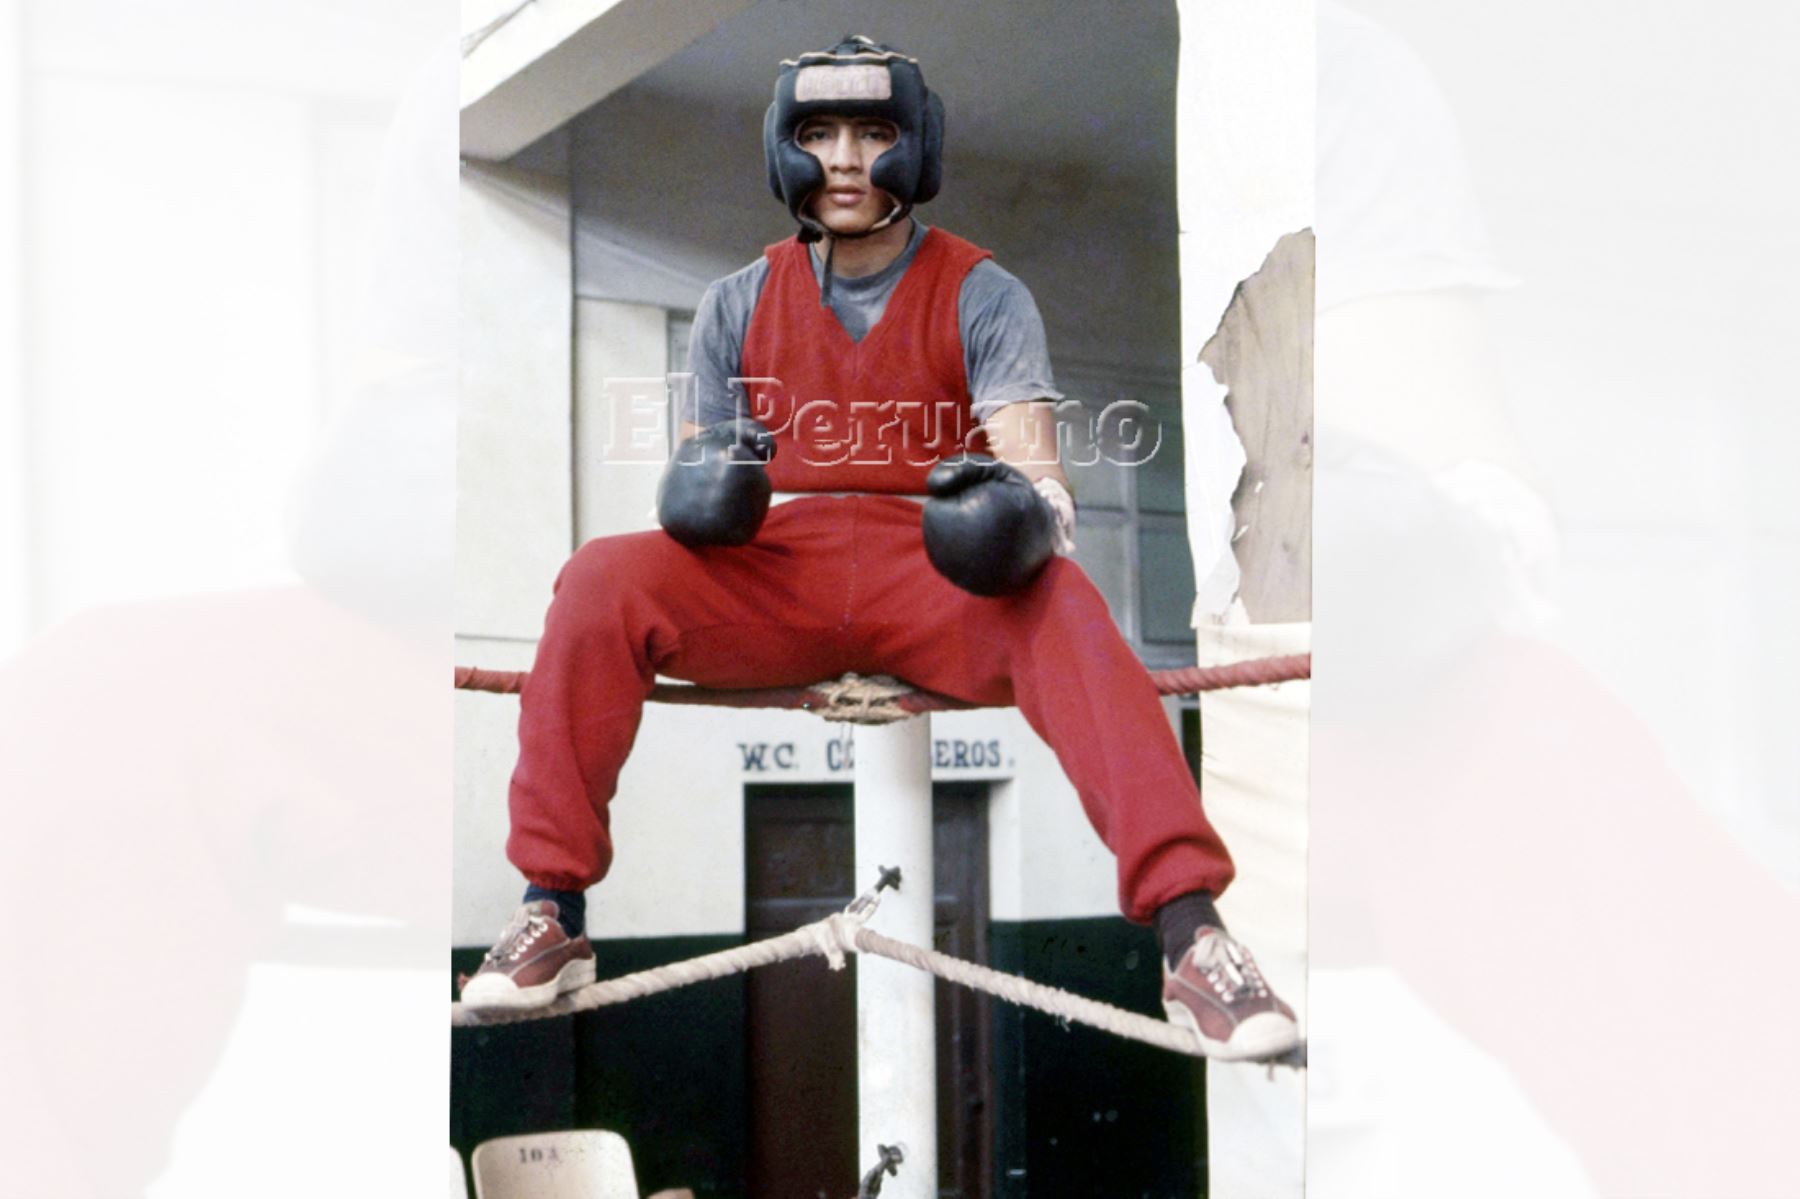 Lima - 28 enero de 1978 / Entrenamiento del boxeador Fernando Rocco en la Bombonera del Estadio Nacional.